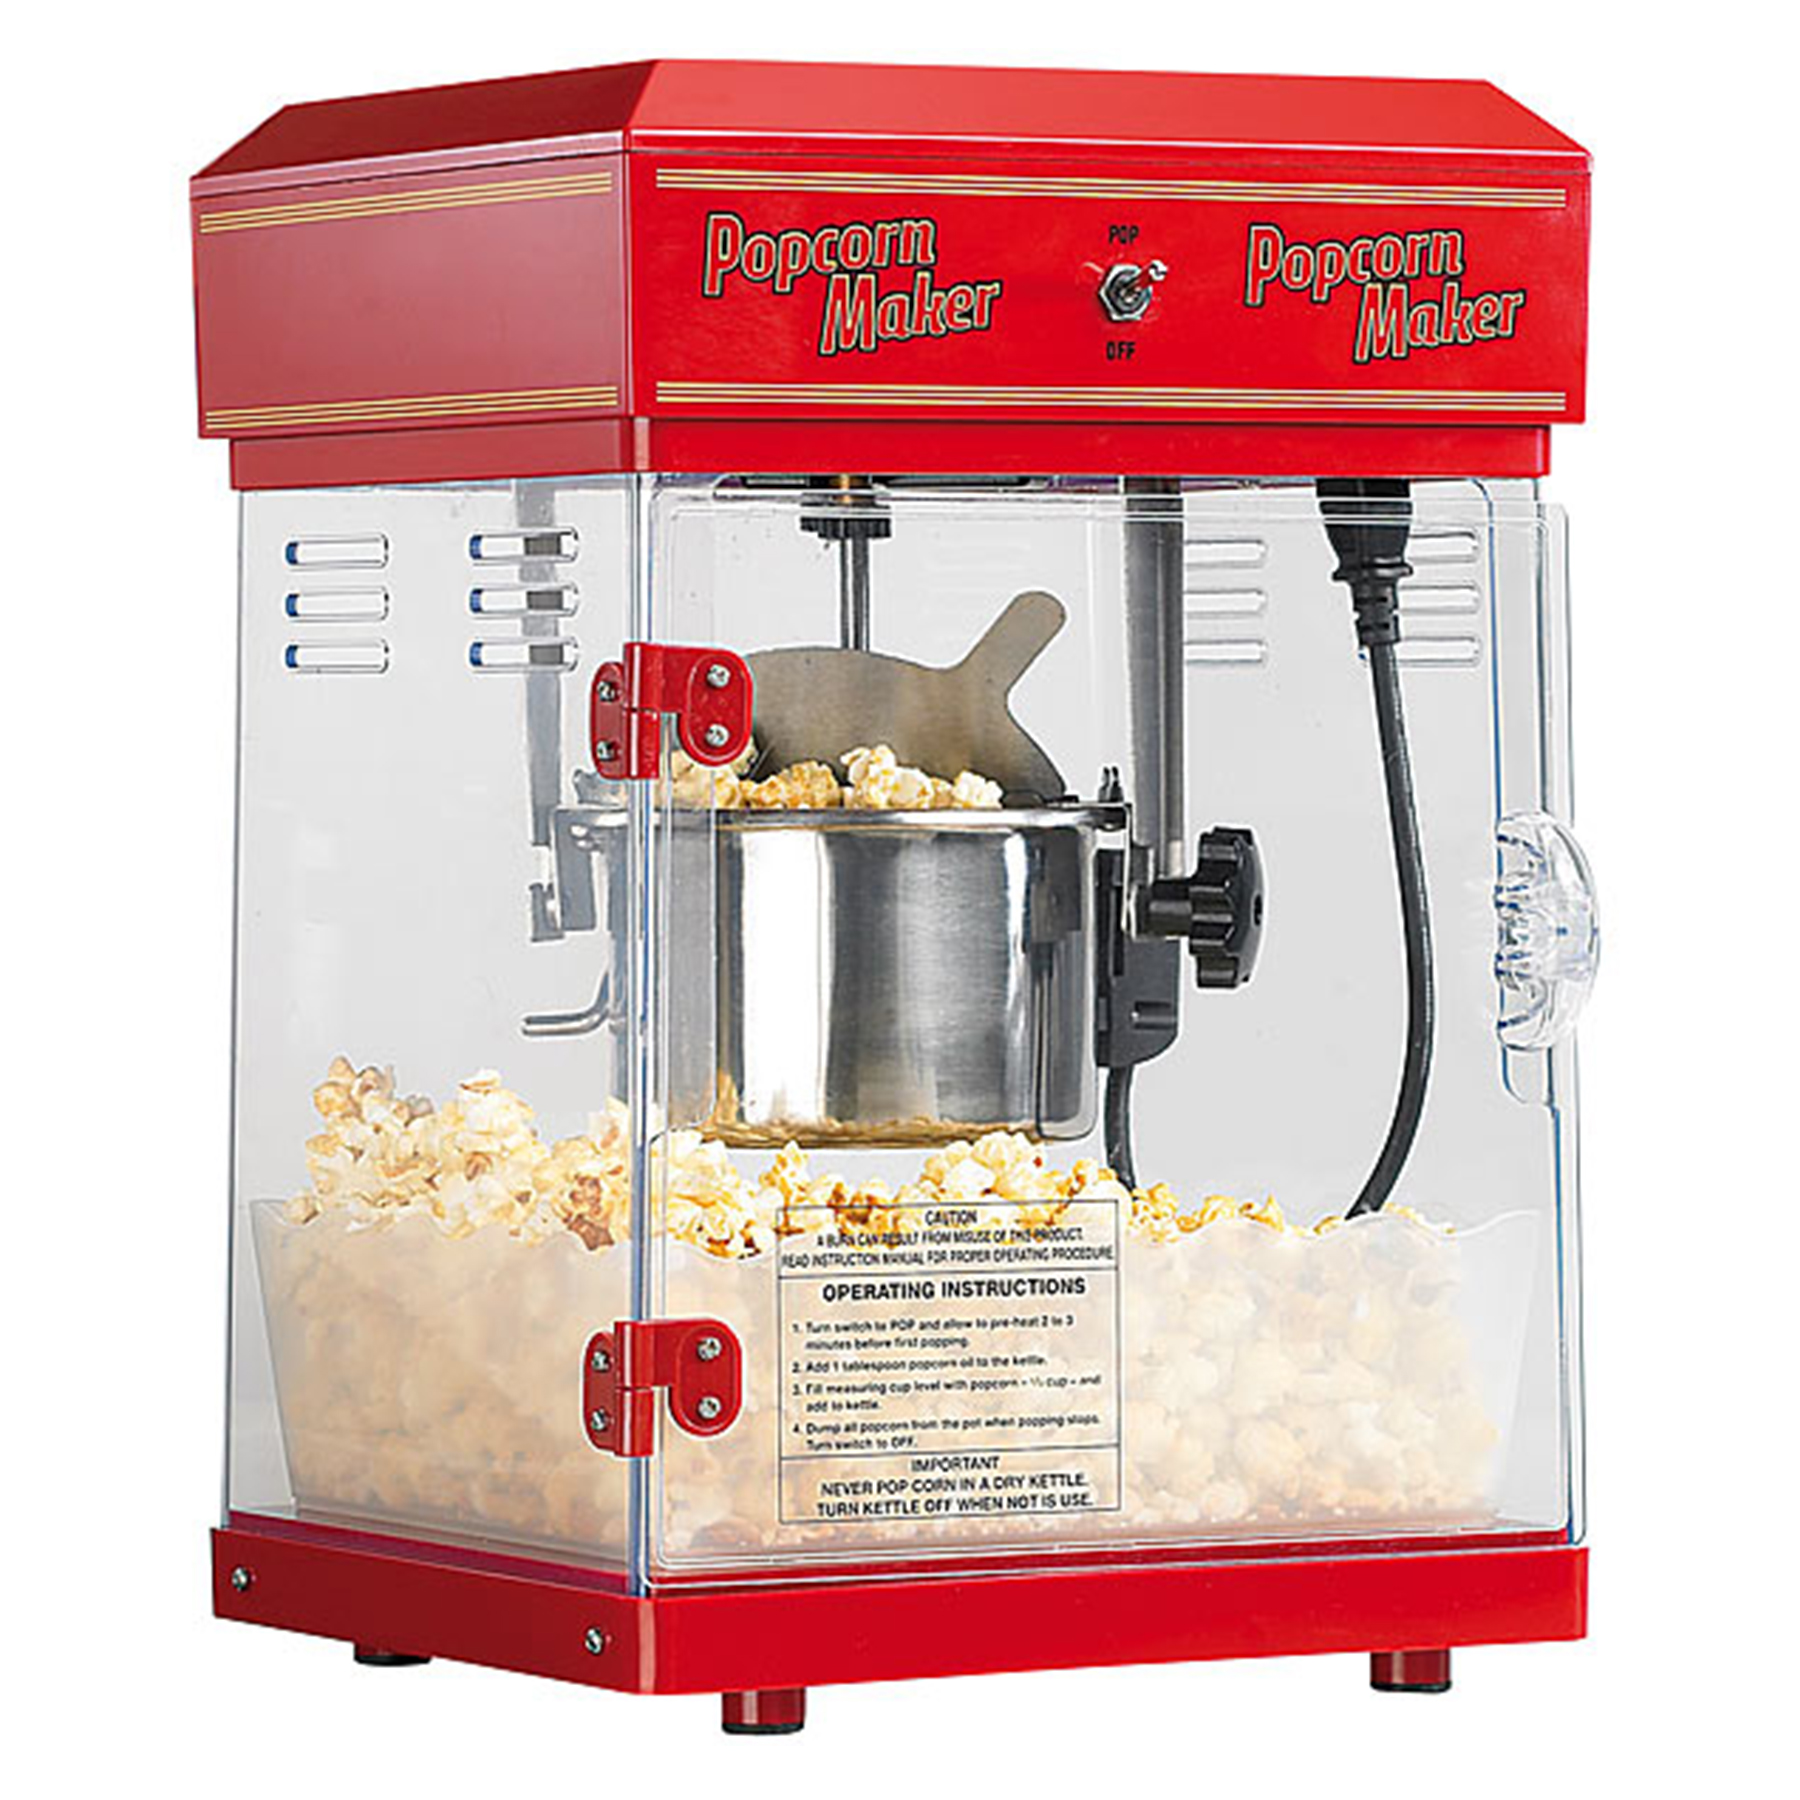 Popcornmaschine mit Wagen - Premium Edition 2197 - 4